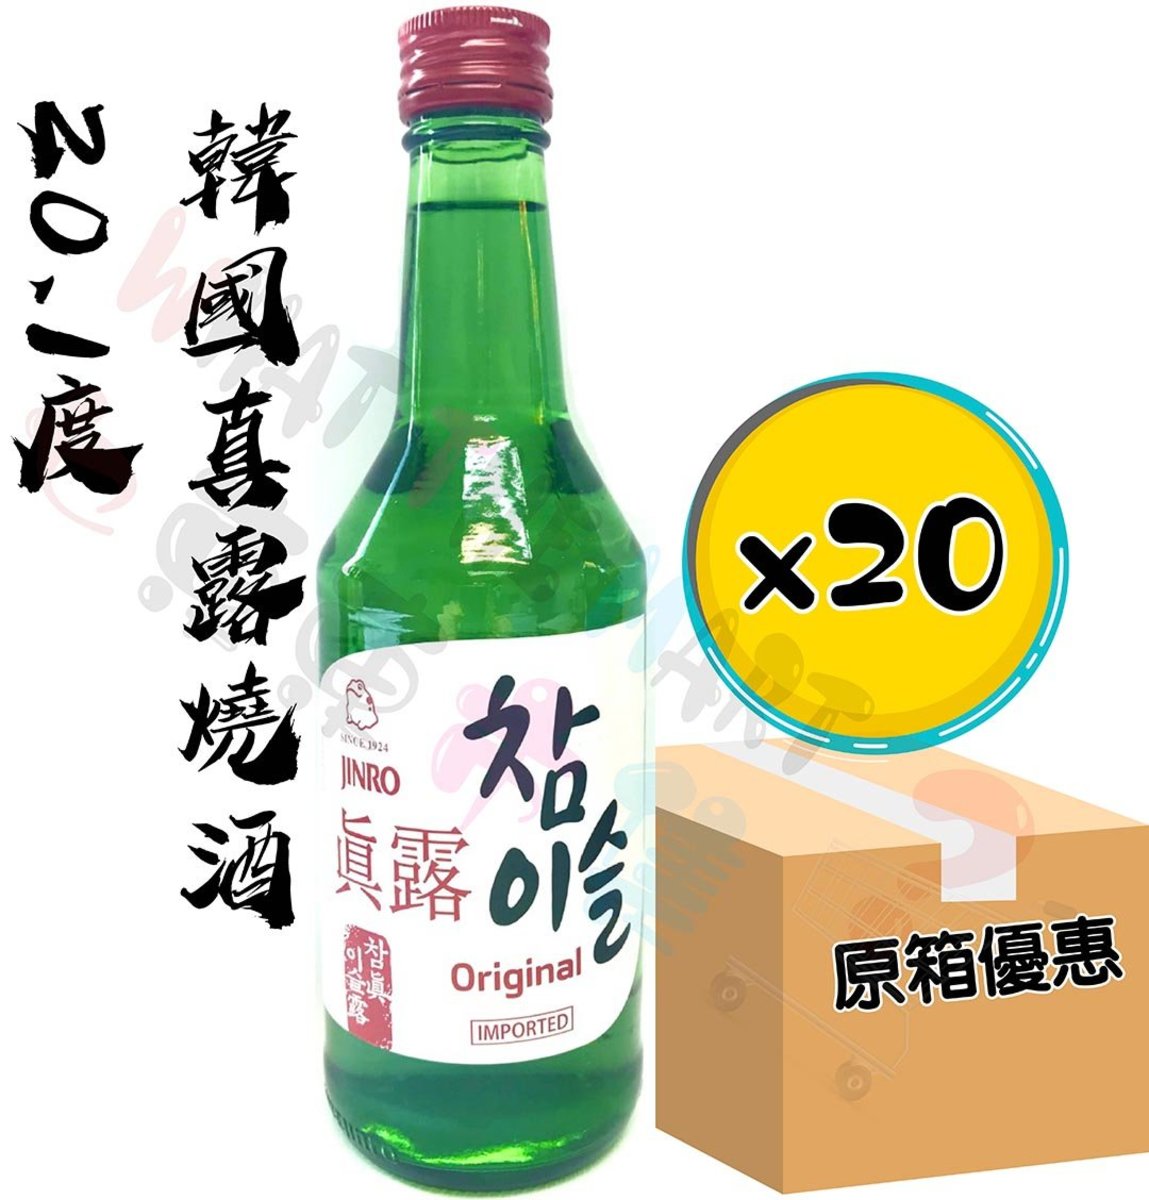 【20 件】韓國燒酒20.1度 360ml (8801048941001_20)